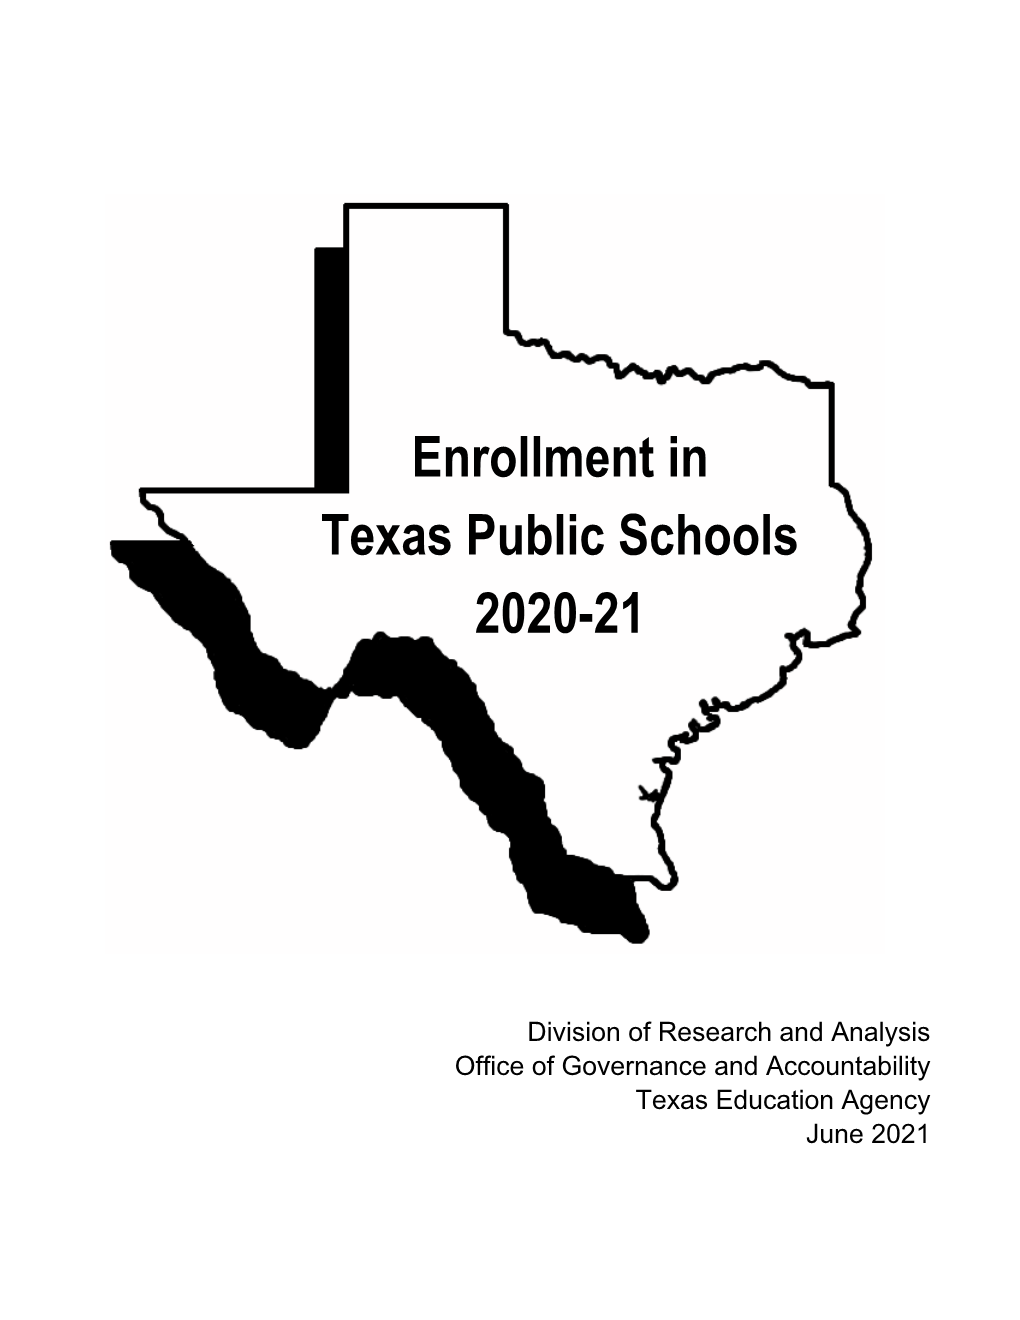 Enrollment in Texas Public Schools 2020-21